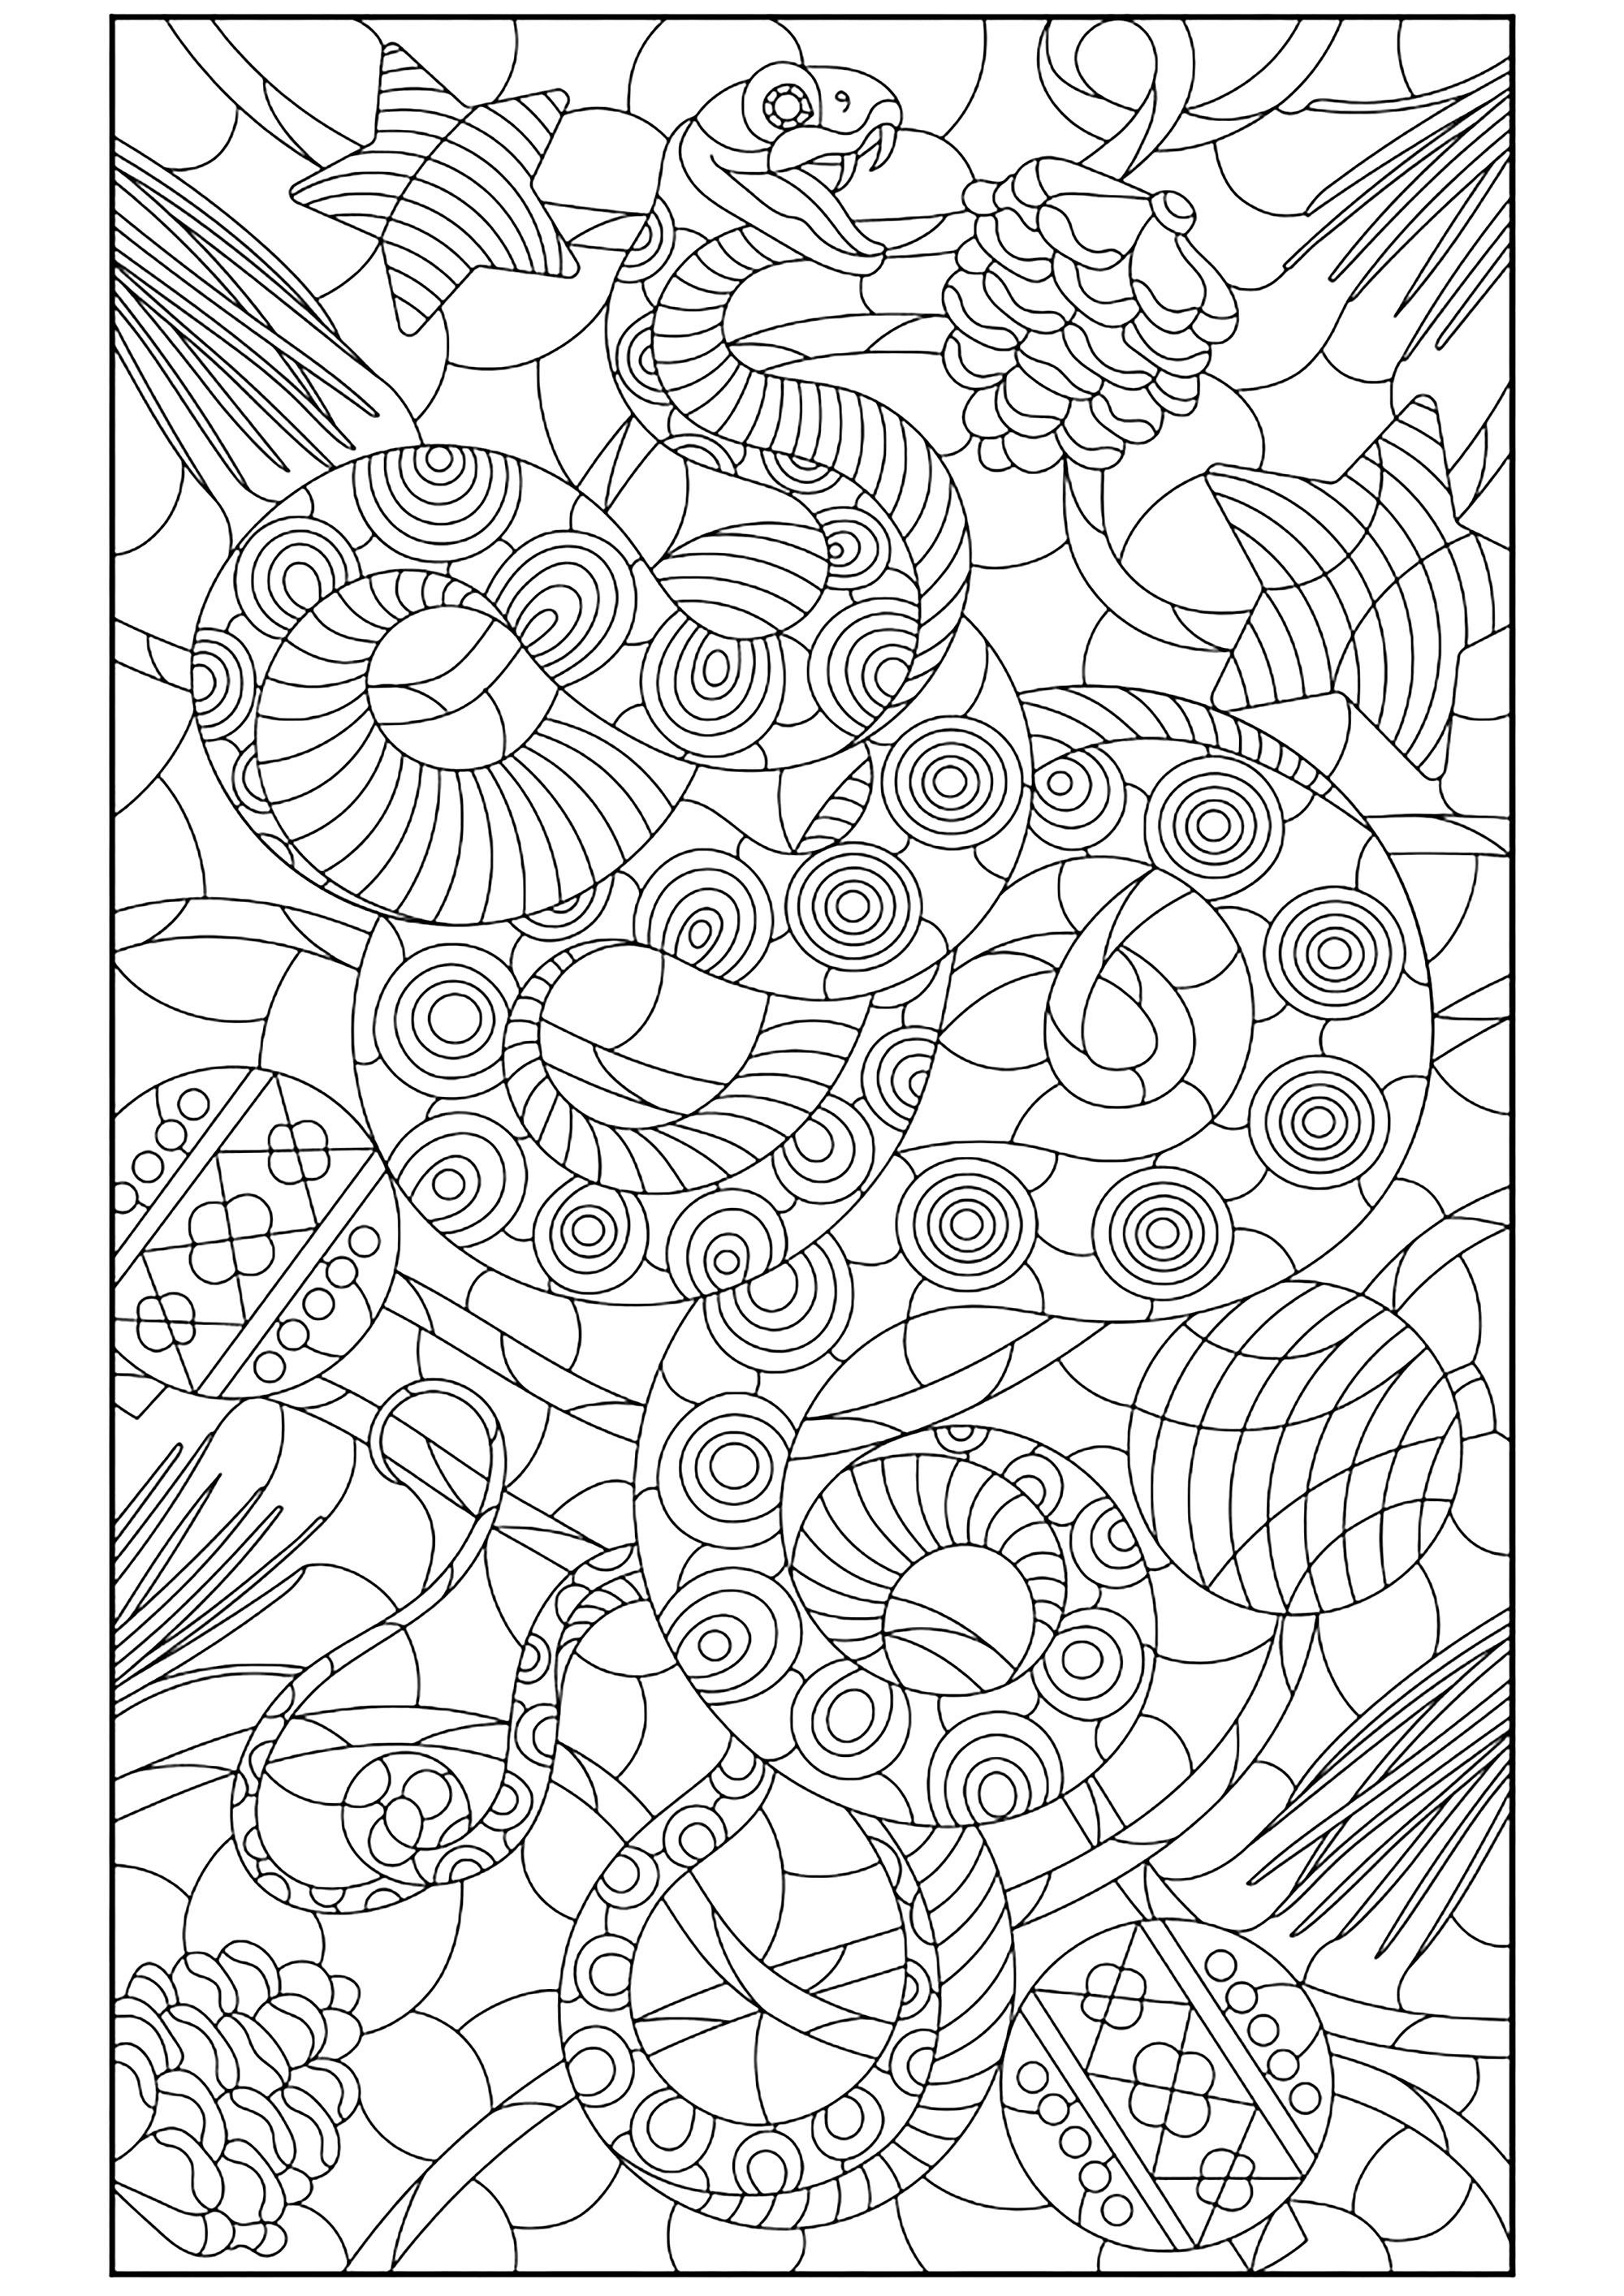 Schlange und abwechslungsreiche Muster. Ein erhabenes Kolorit mit einer extrem feinen Zeichnung, Quelle : 123rf   Künstler : zagory